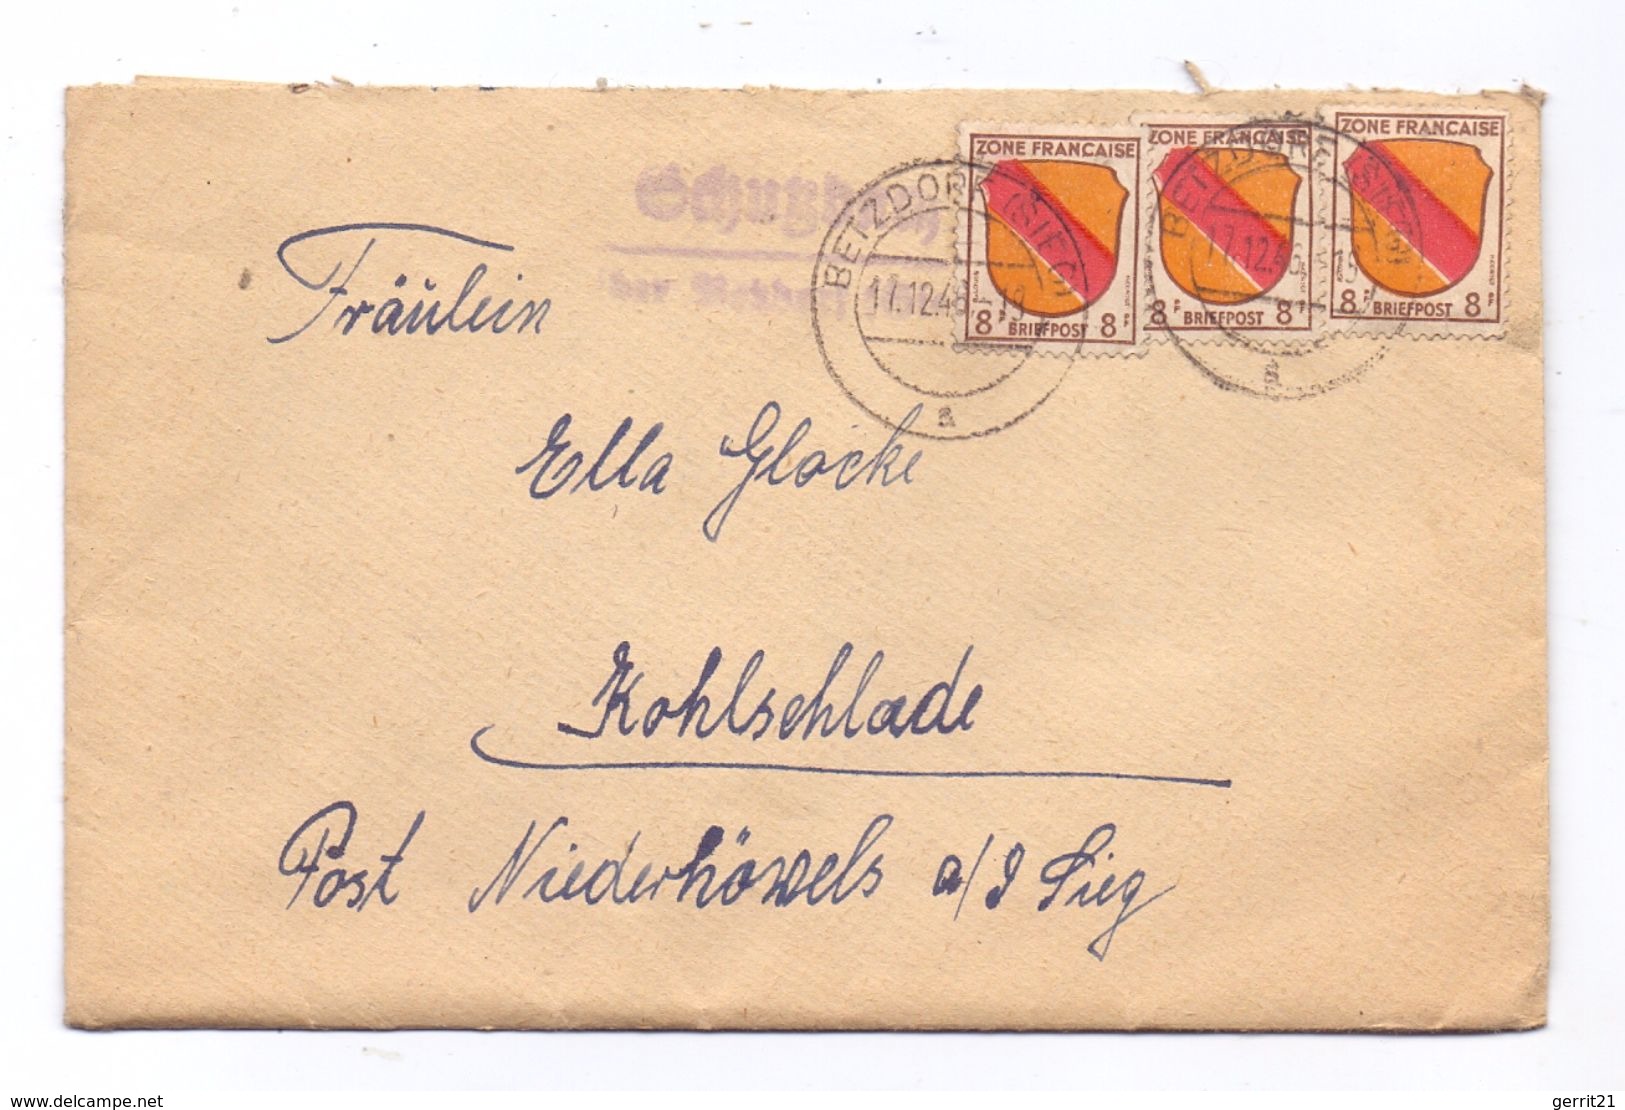 5244 DAADEN - SCHUTZBACH, Postgeschichte, Landpoststempel "Schutzbach über Betzdorf", 1946, Franz. Zone, Michel 4 (3) - Altenkirchen